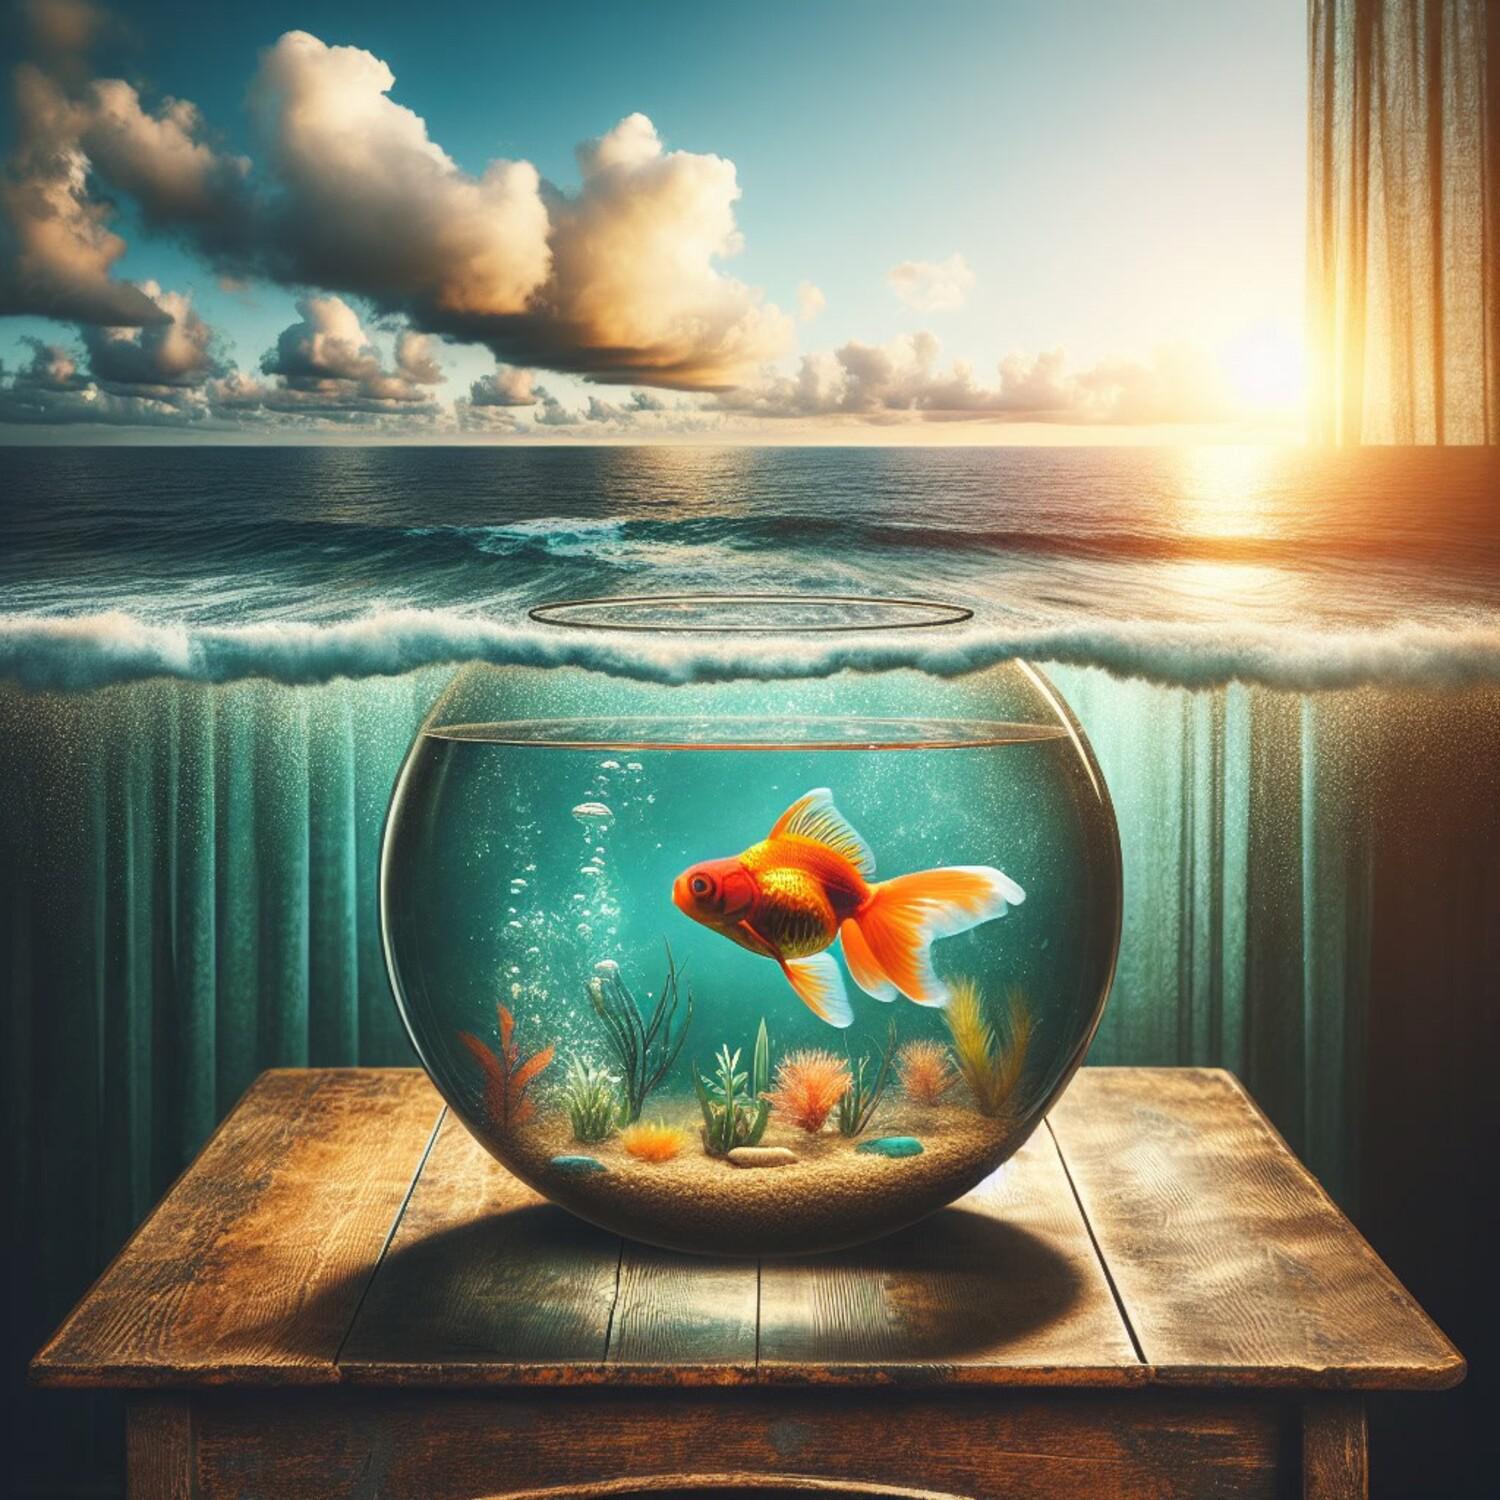 Постер альбома Золотая рыбка